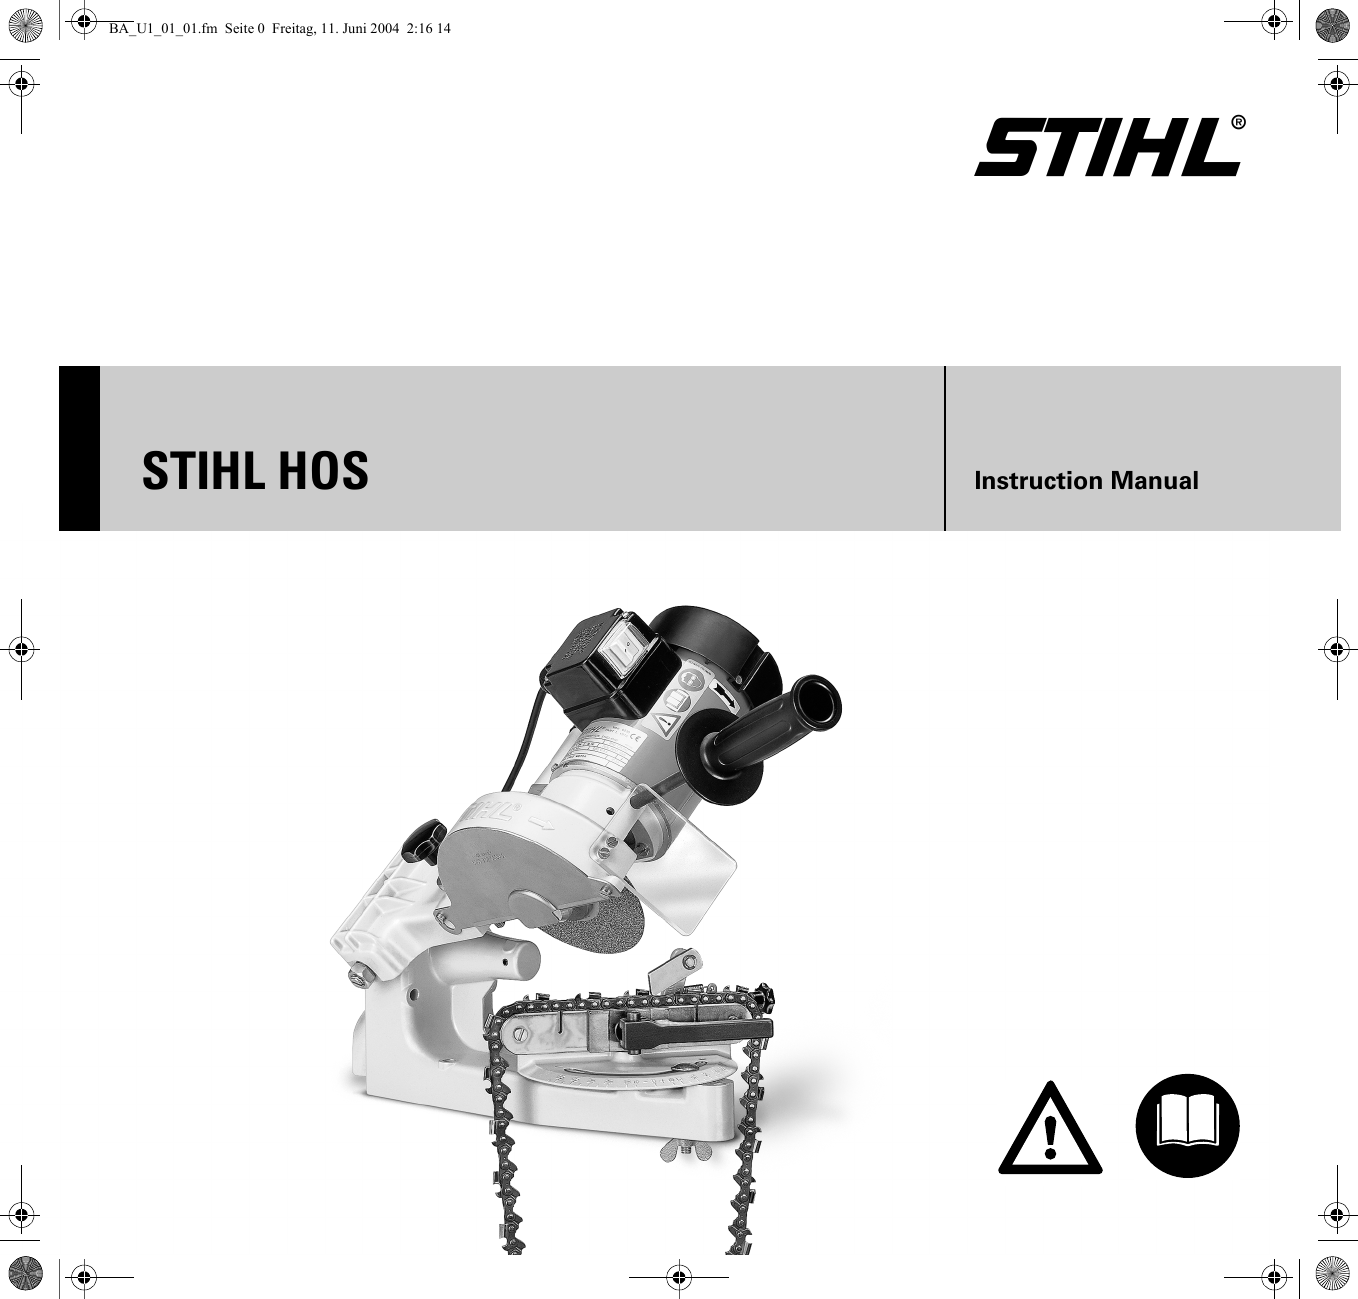 stihl-hos-manual-ba-u1-01-01